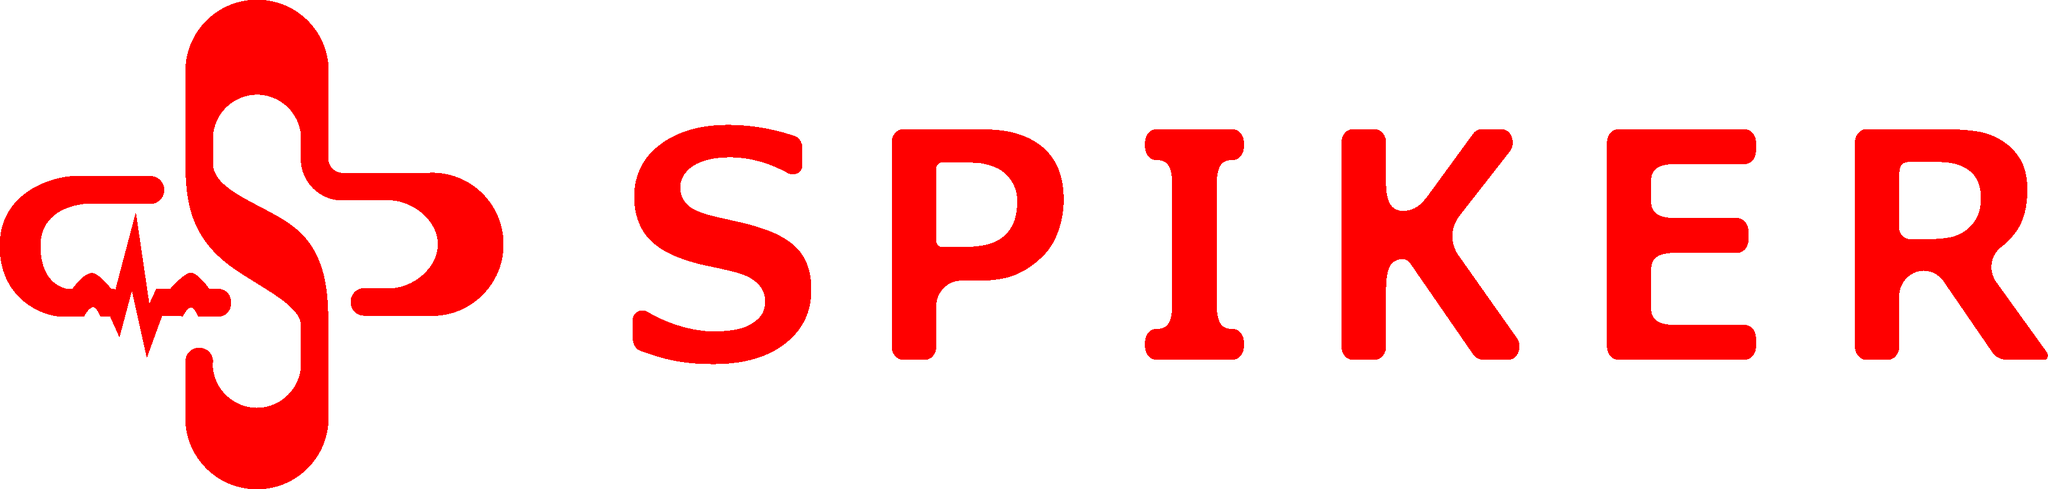 Spiker_logo